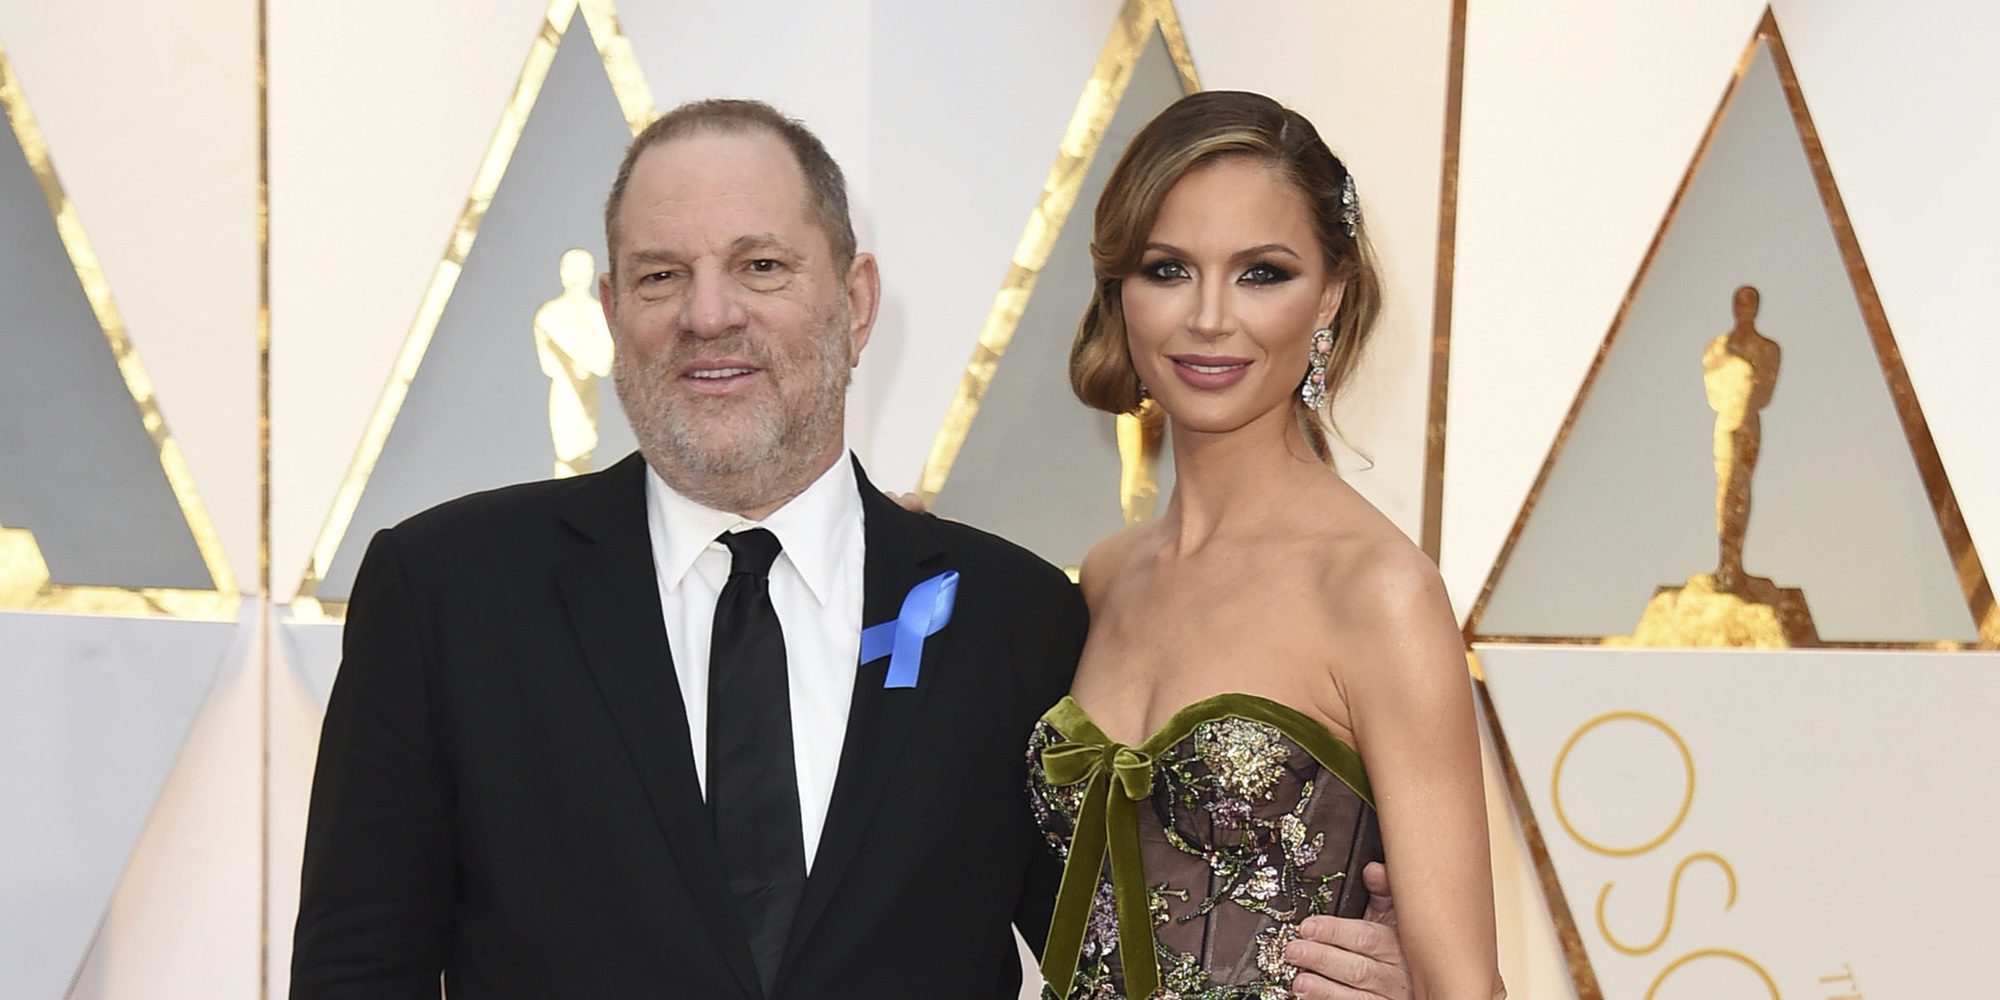 Harvey Weinstein y su esposa Georgina Chapman llegan a un acuerdo en su proceso de divorcio